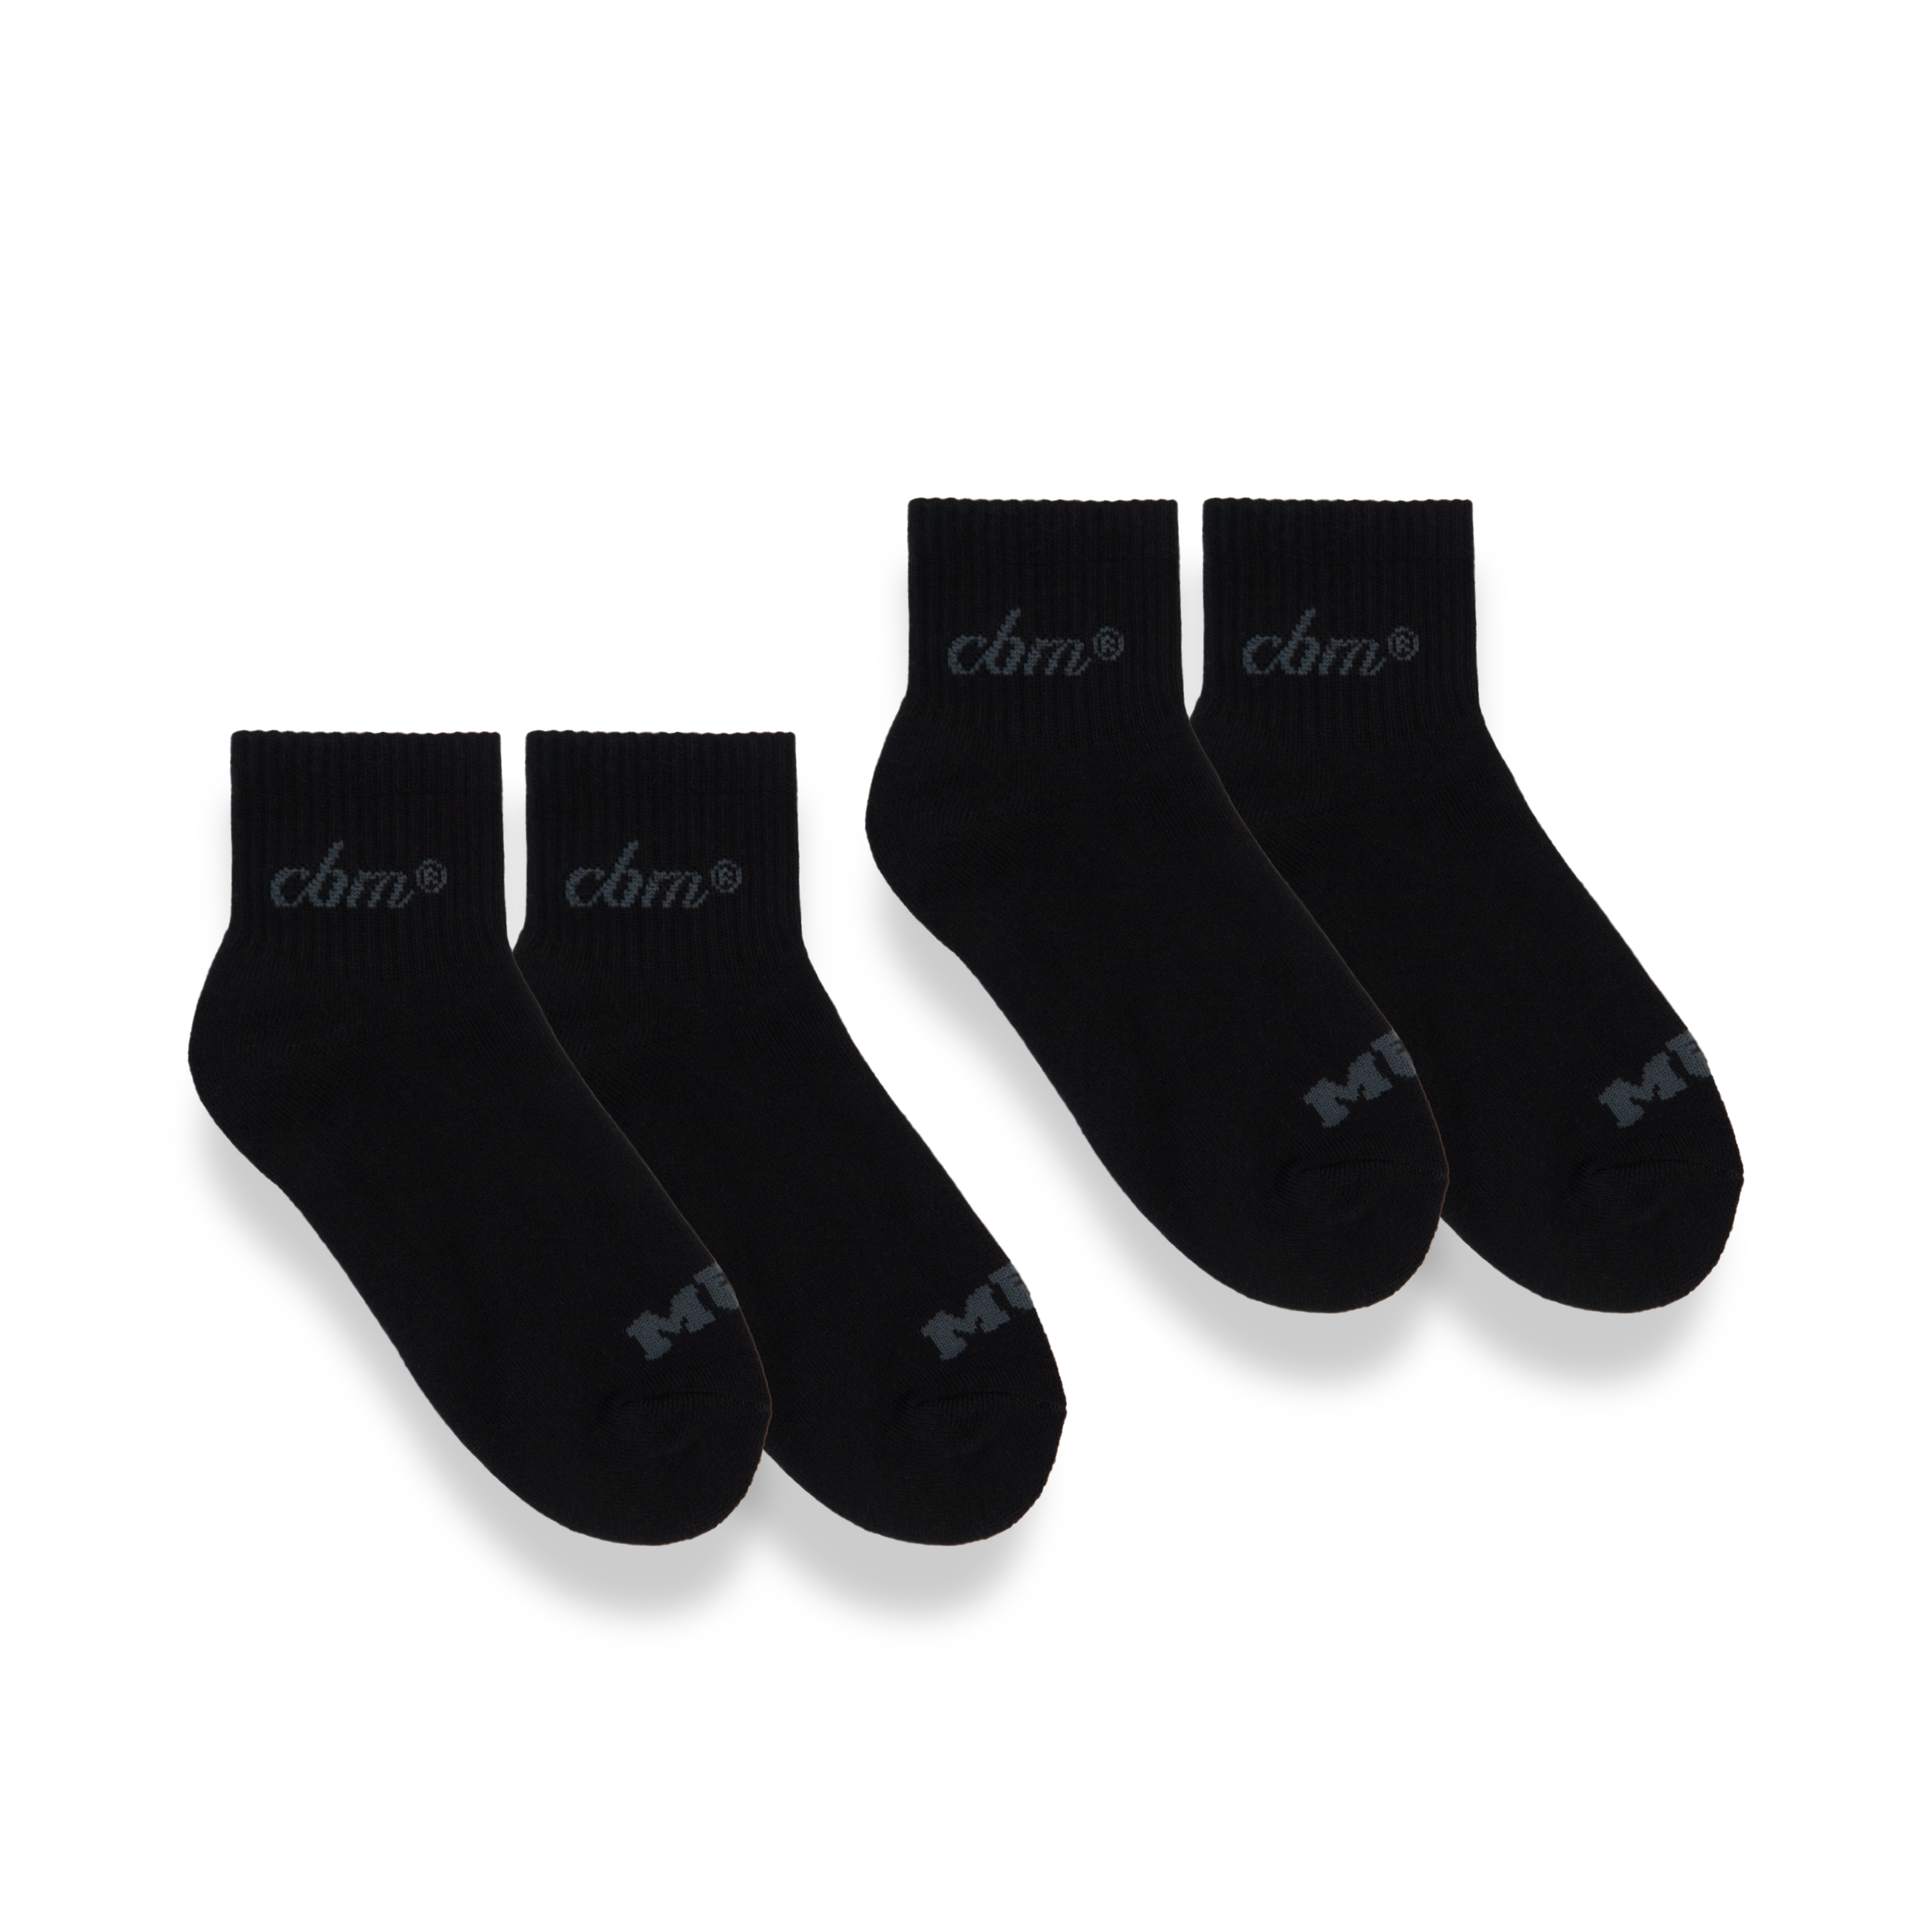 Crew socks 3" - Black Pack (2)